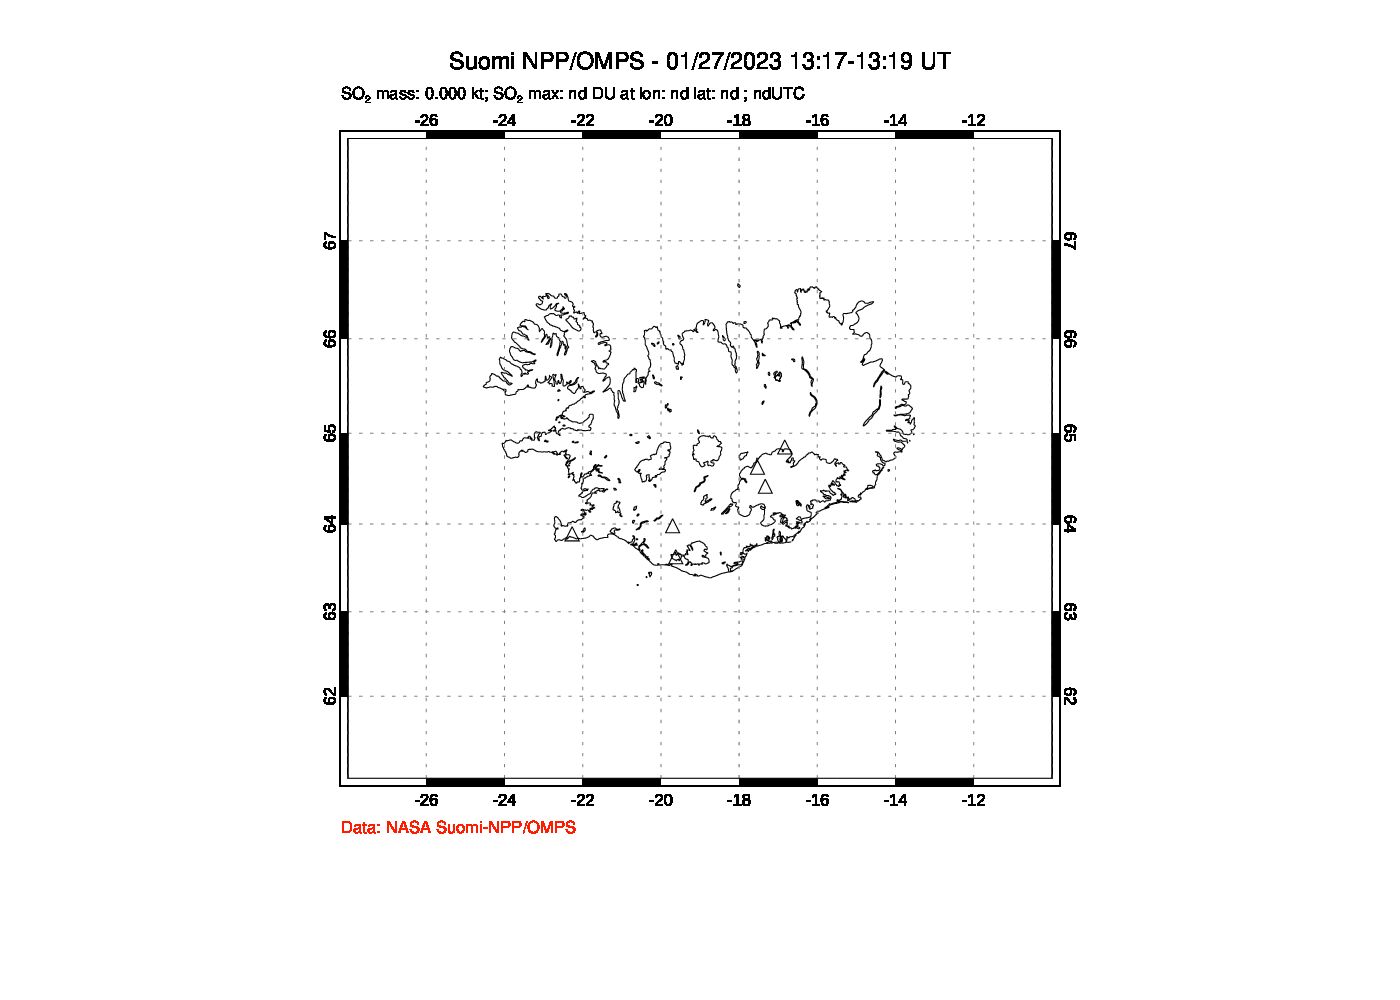 A sulfur dioxide image over Iceland on Jan 27, 2023.